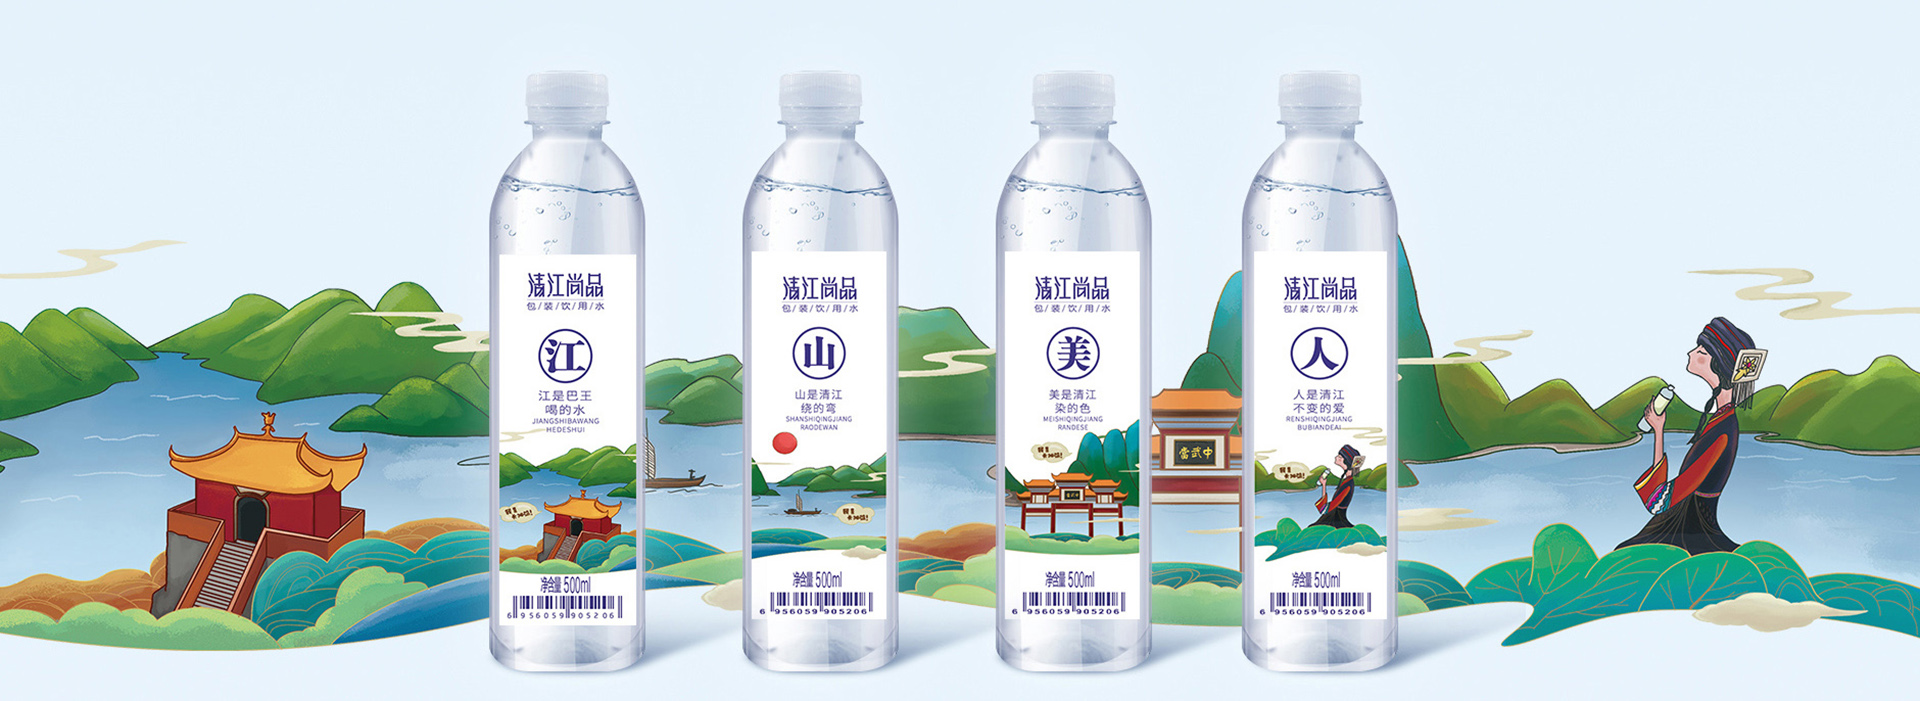 江山美人文创系列瓶装水